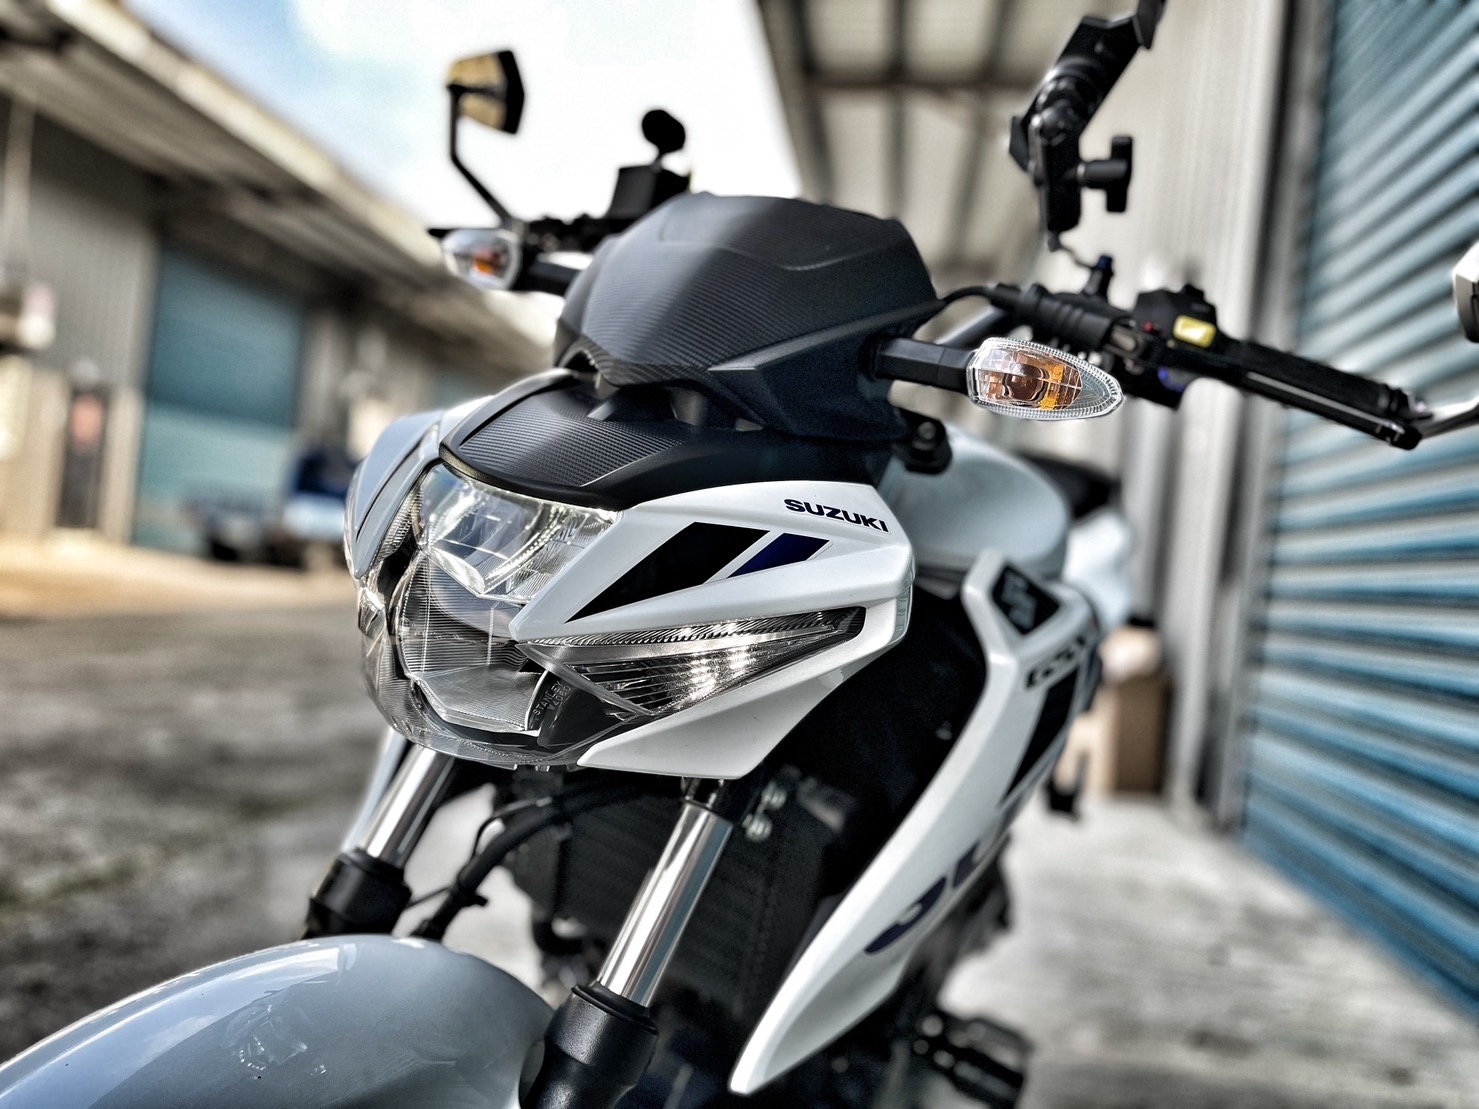 【小資族二手重機買賣】SUZUKI GSX-S150 - 「Webike-摩托車市」 白色系 重點改裝 無事故 小資族二手重機買賣